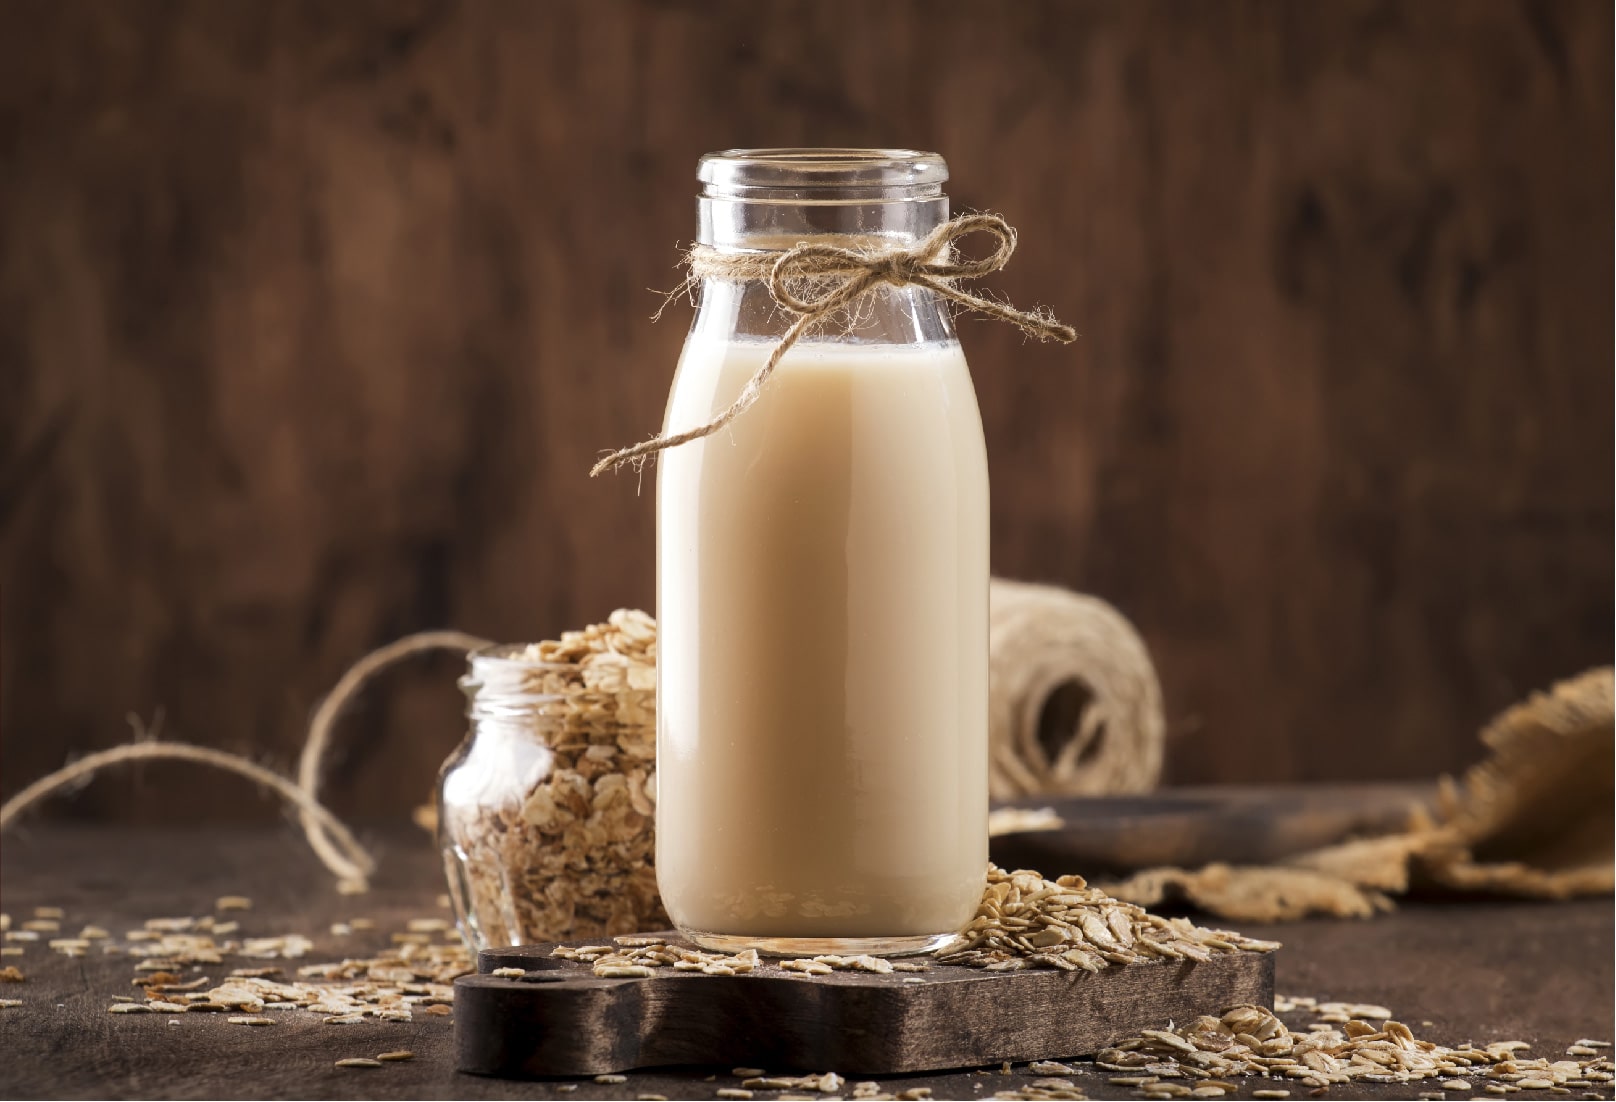 gluten free oat milk in a bottle